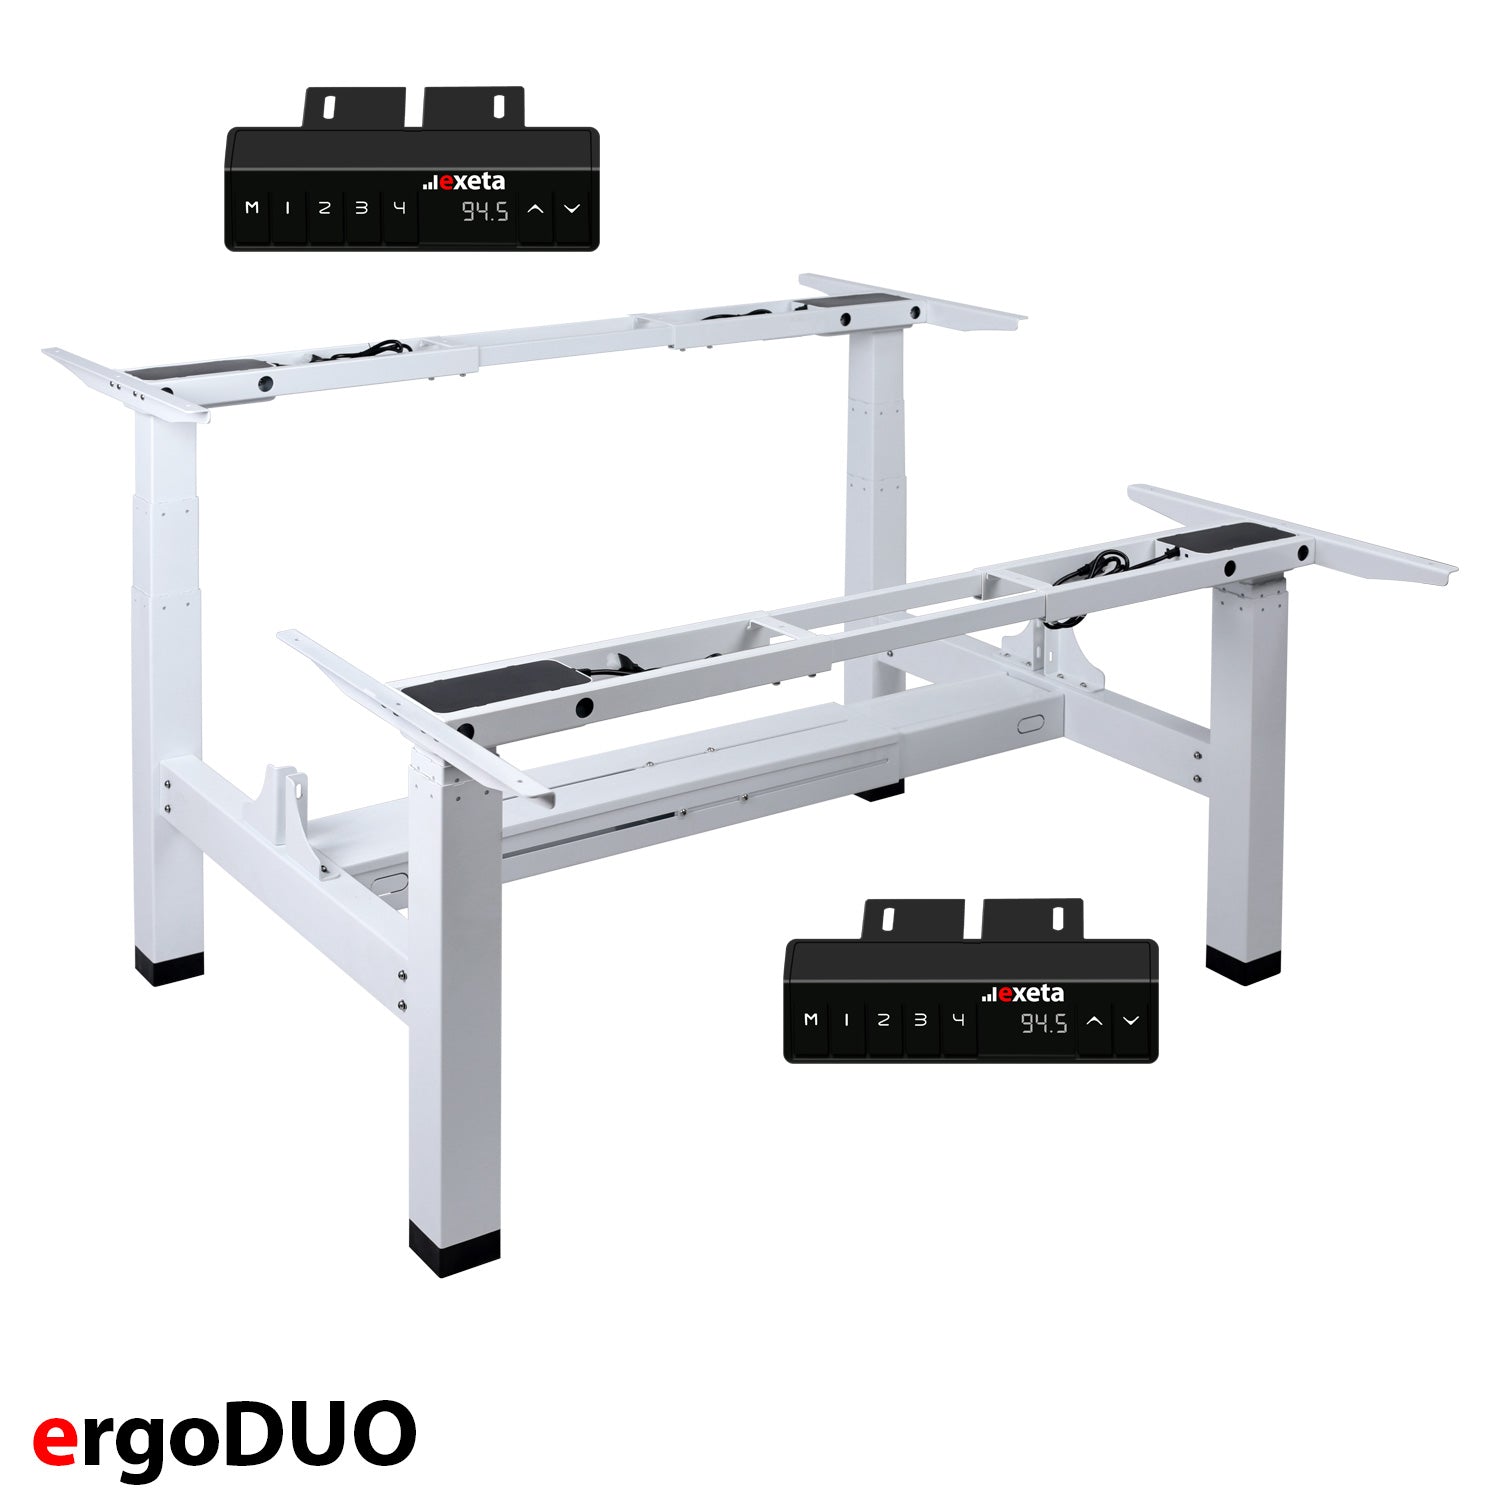 Garantie | der-ergotisch 5J – | Weiß: Dual-Platz Elektro-Tisch ergoDUO exeta